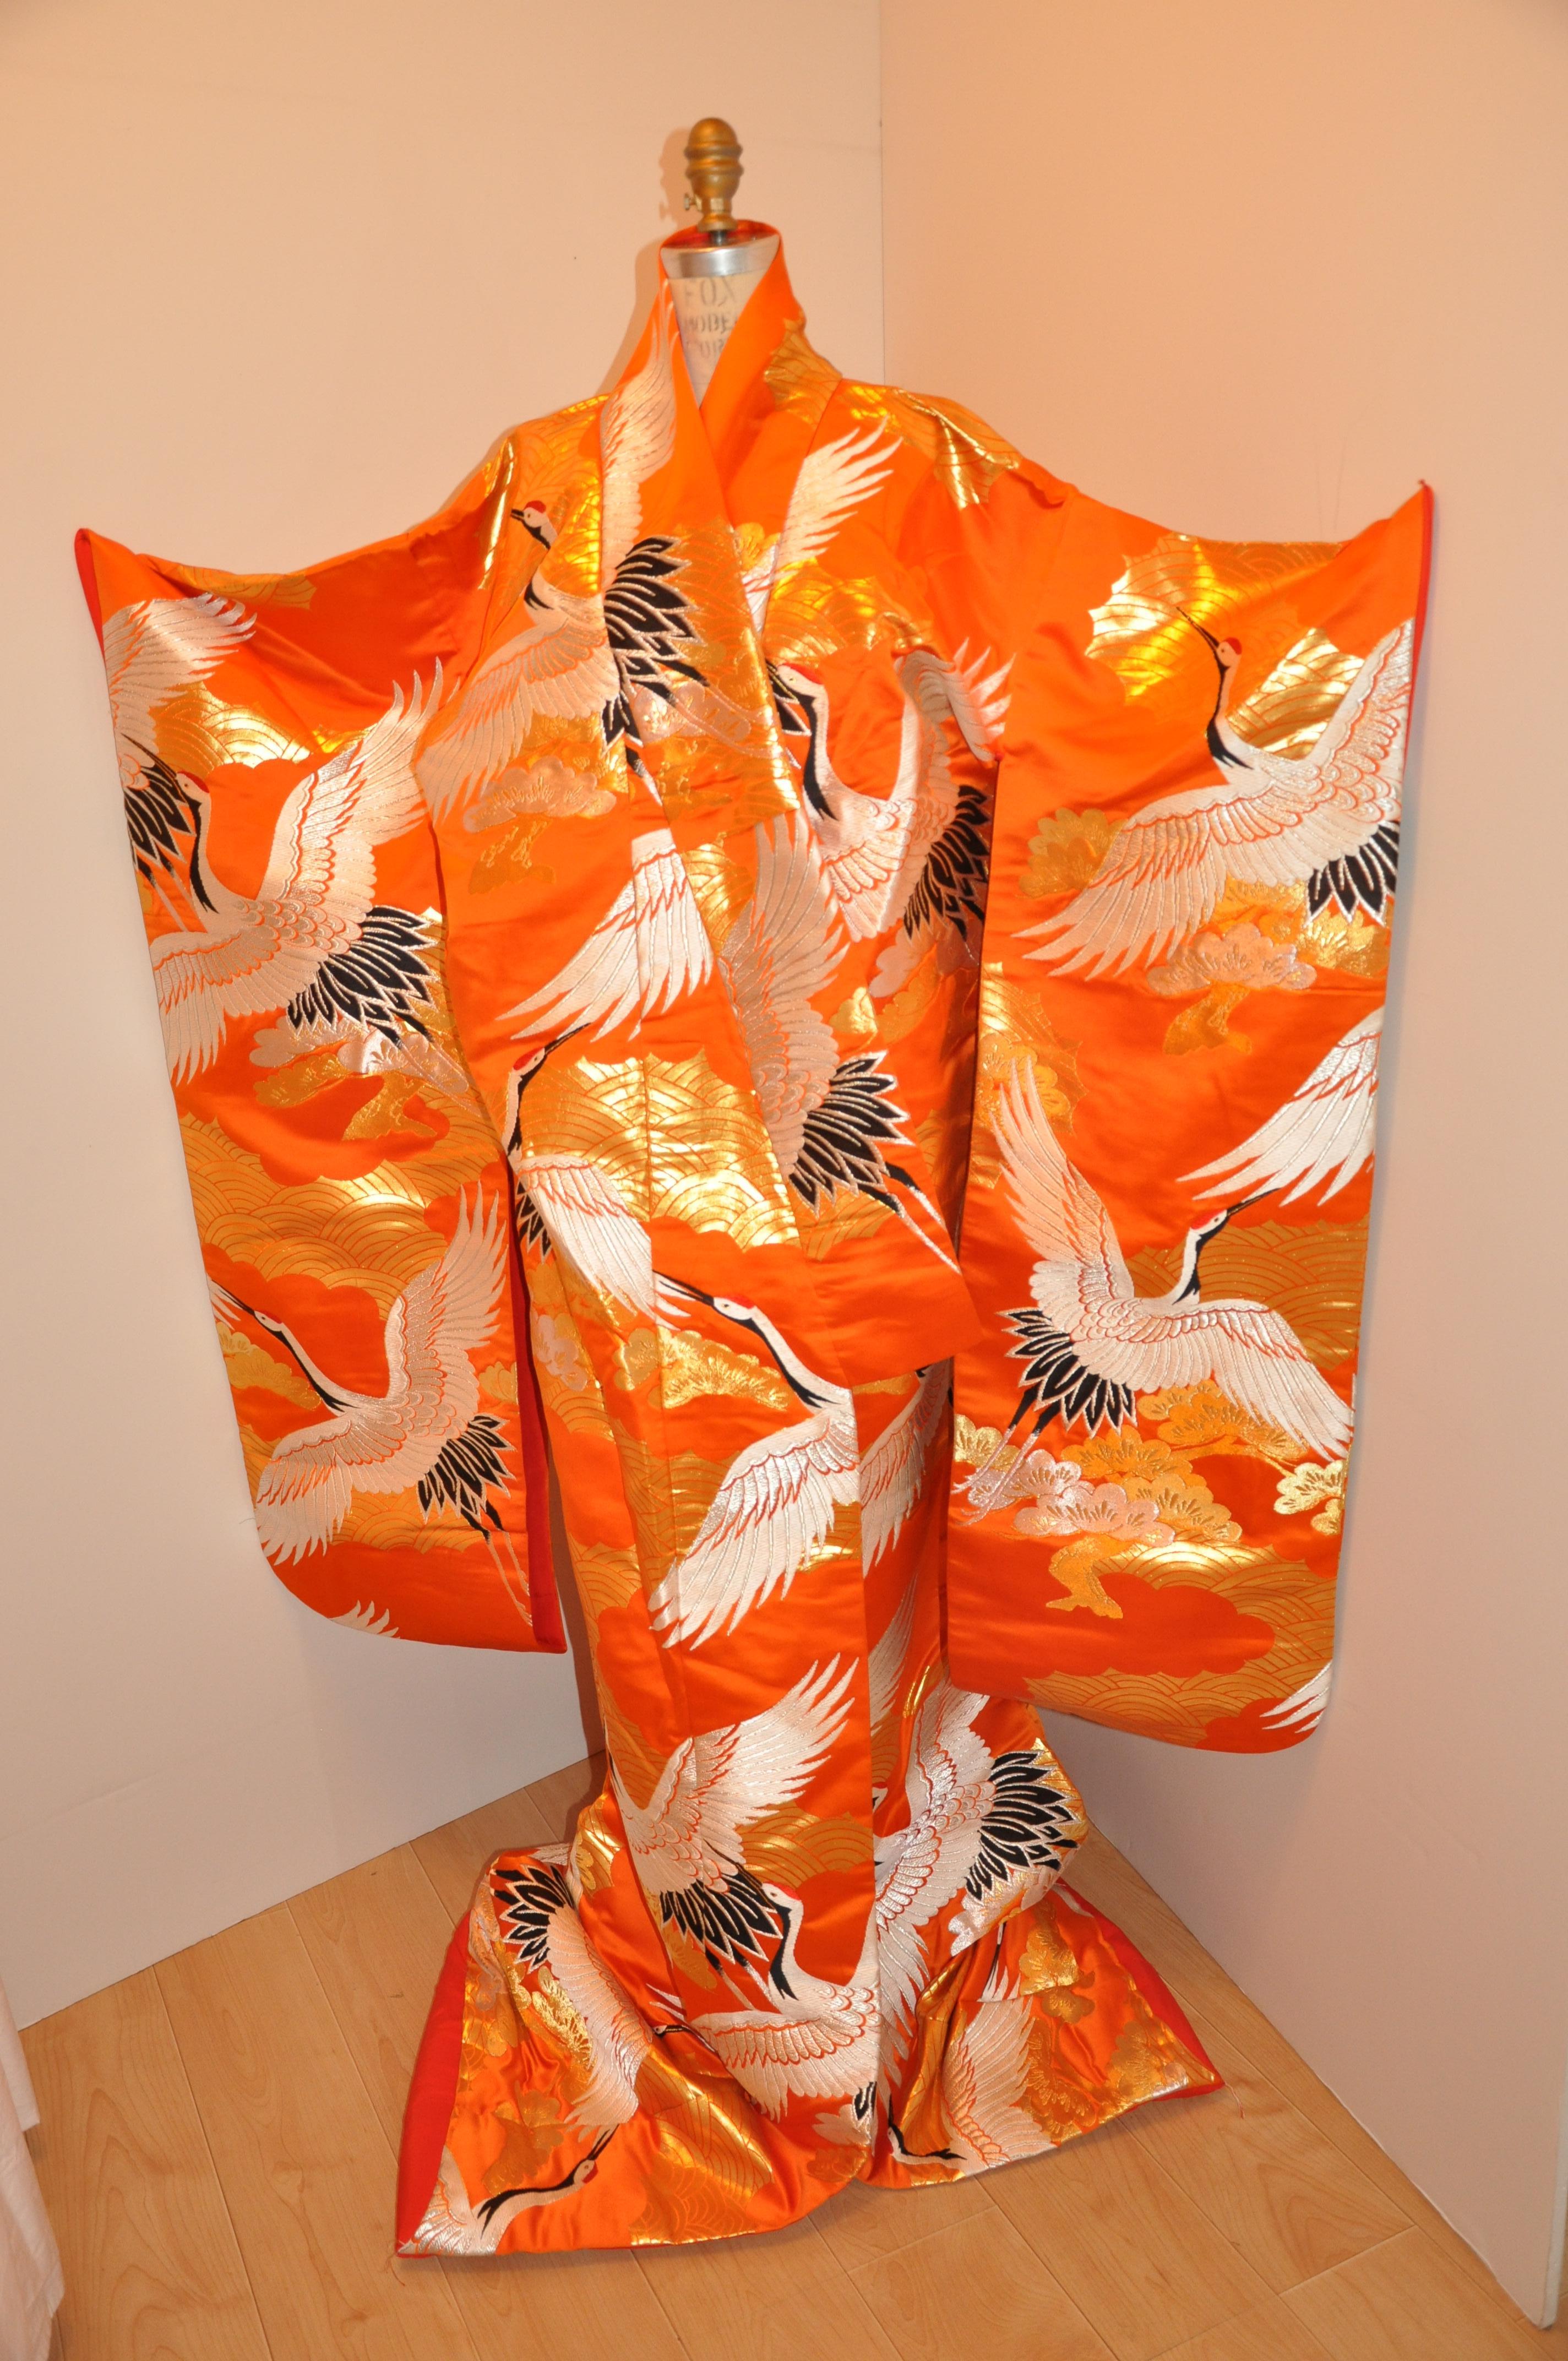      Diese wunderbar fett Mandarine zeremoniellen detailliert bestickt Seide Kimono detaillierte Herde von 